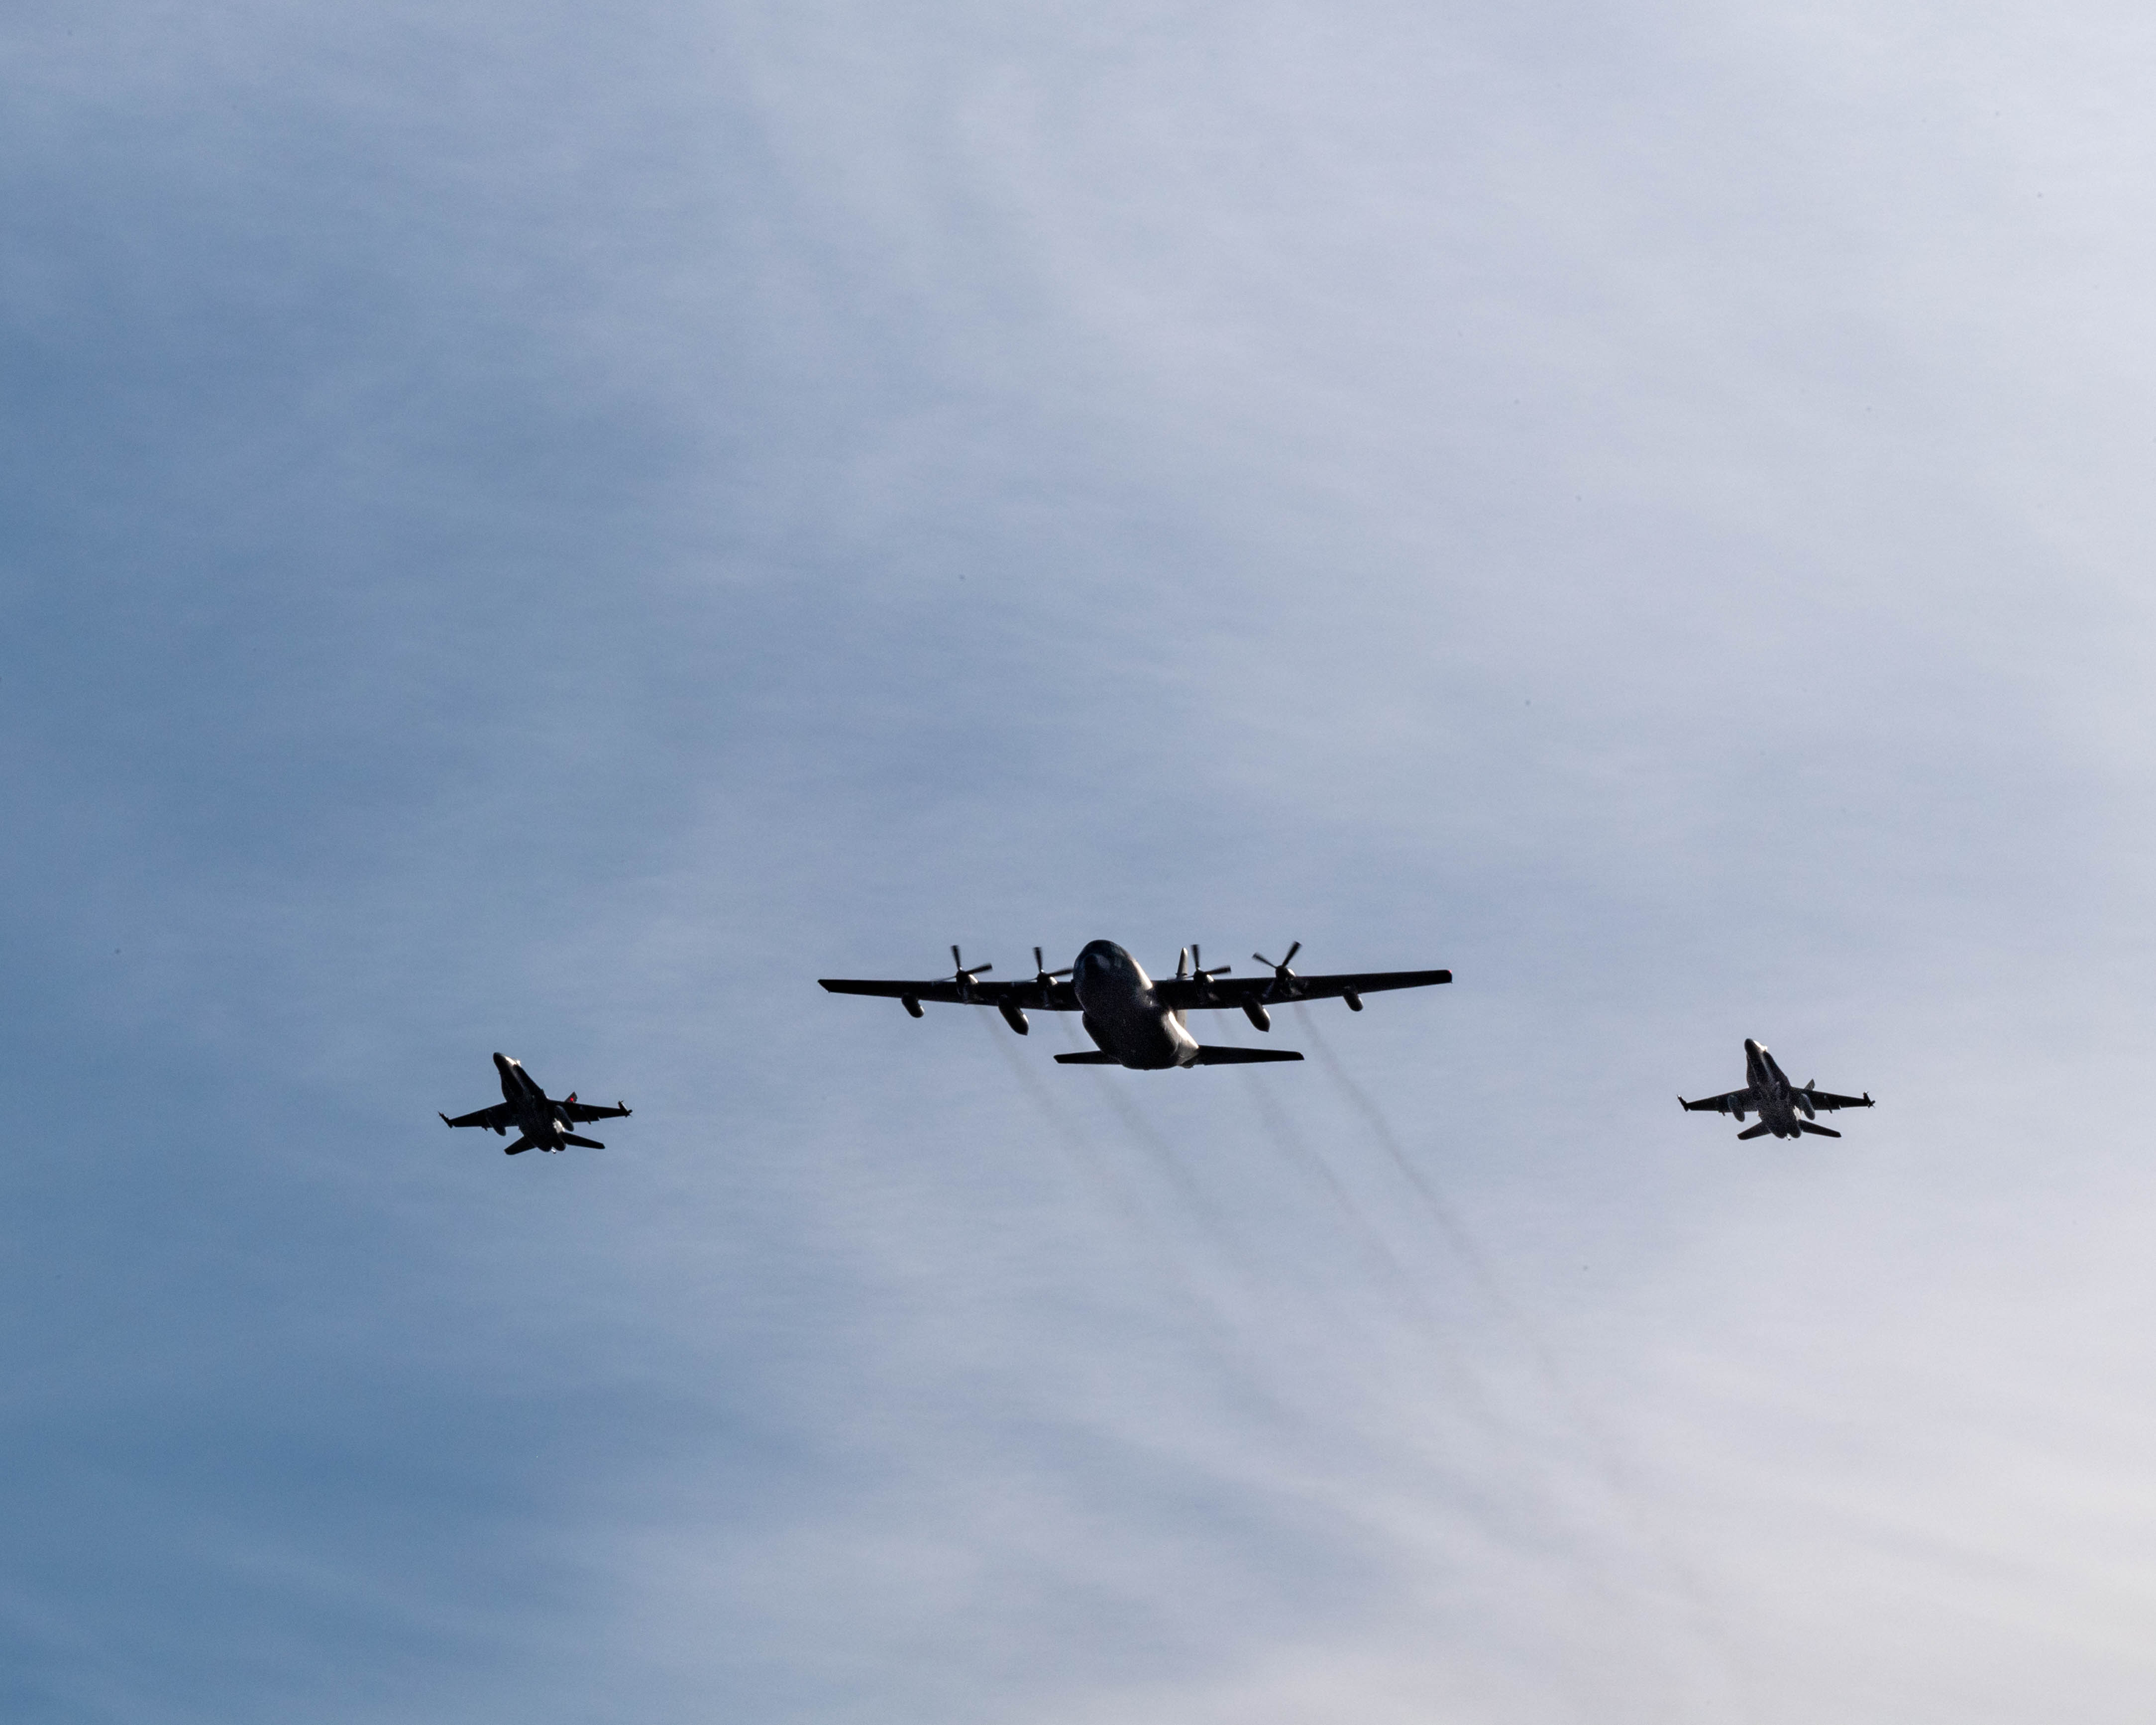 Un avion CC-130 Hercules vole en formation avec deux chasseurs CF-188 Hornet le 13 octobre 2020 afin de marquer la 60e année de service de l’aéronef dans l’Aviation royale canadienne. PHOTO : Caporal Darryl Hepner